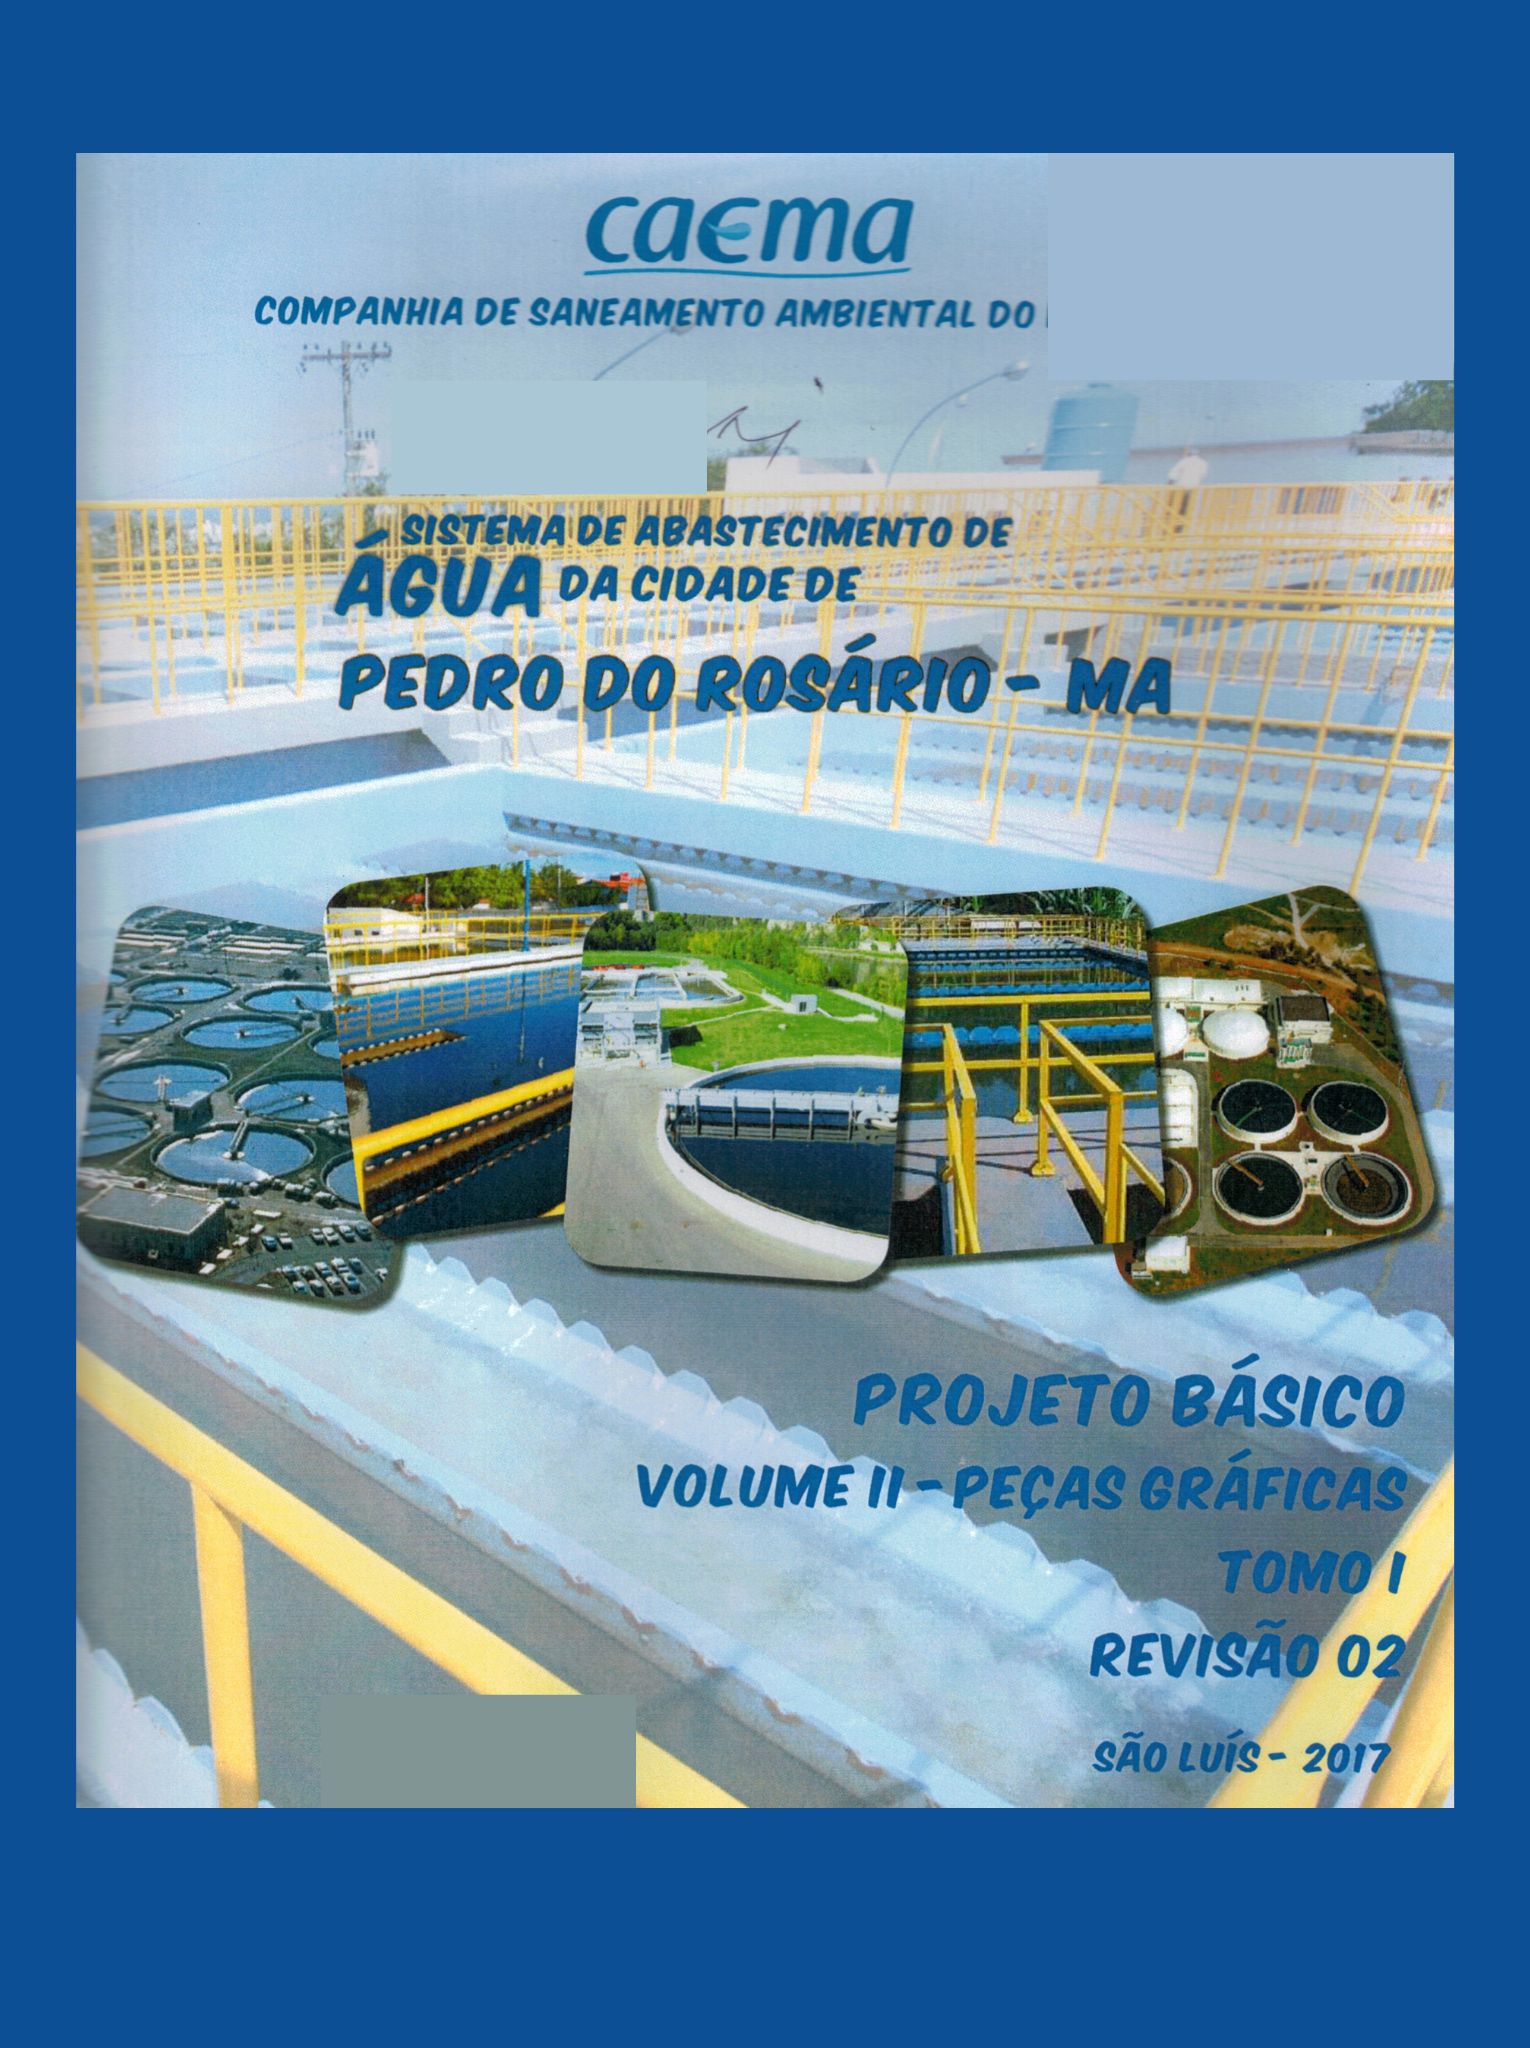 Imagem da capa do Projeto Técnico contendo informação sobre título e autoria.